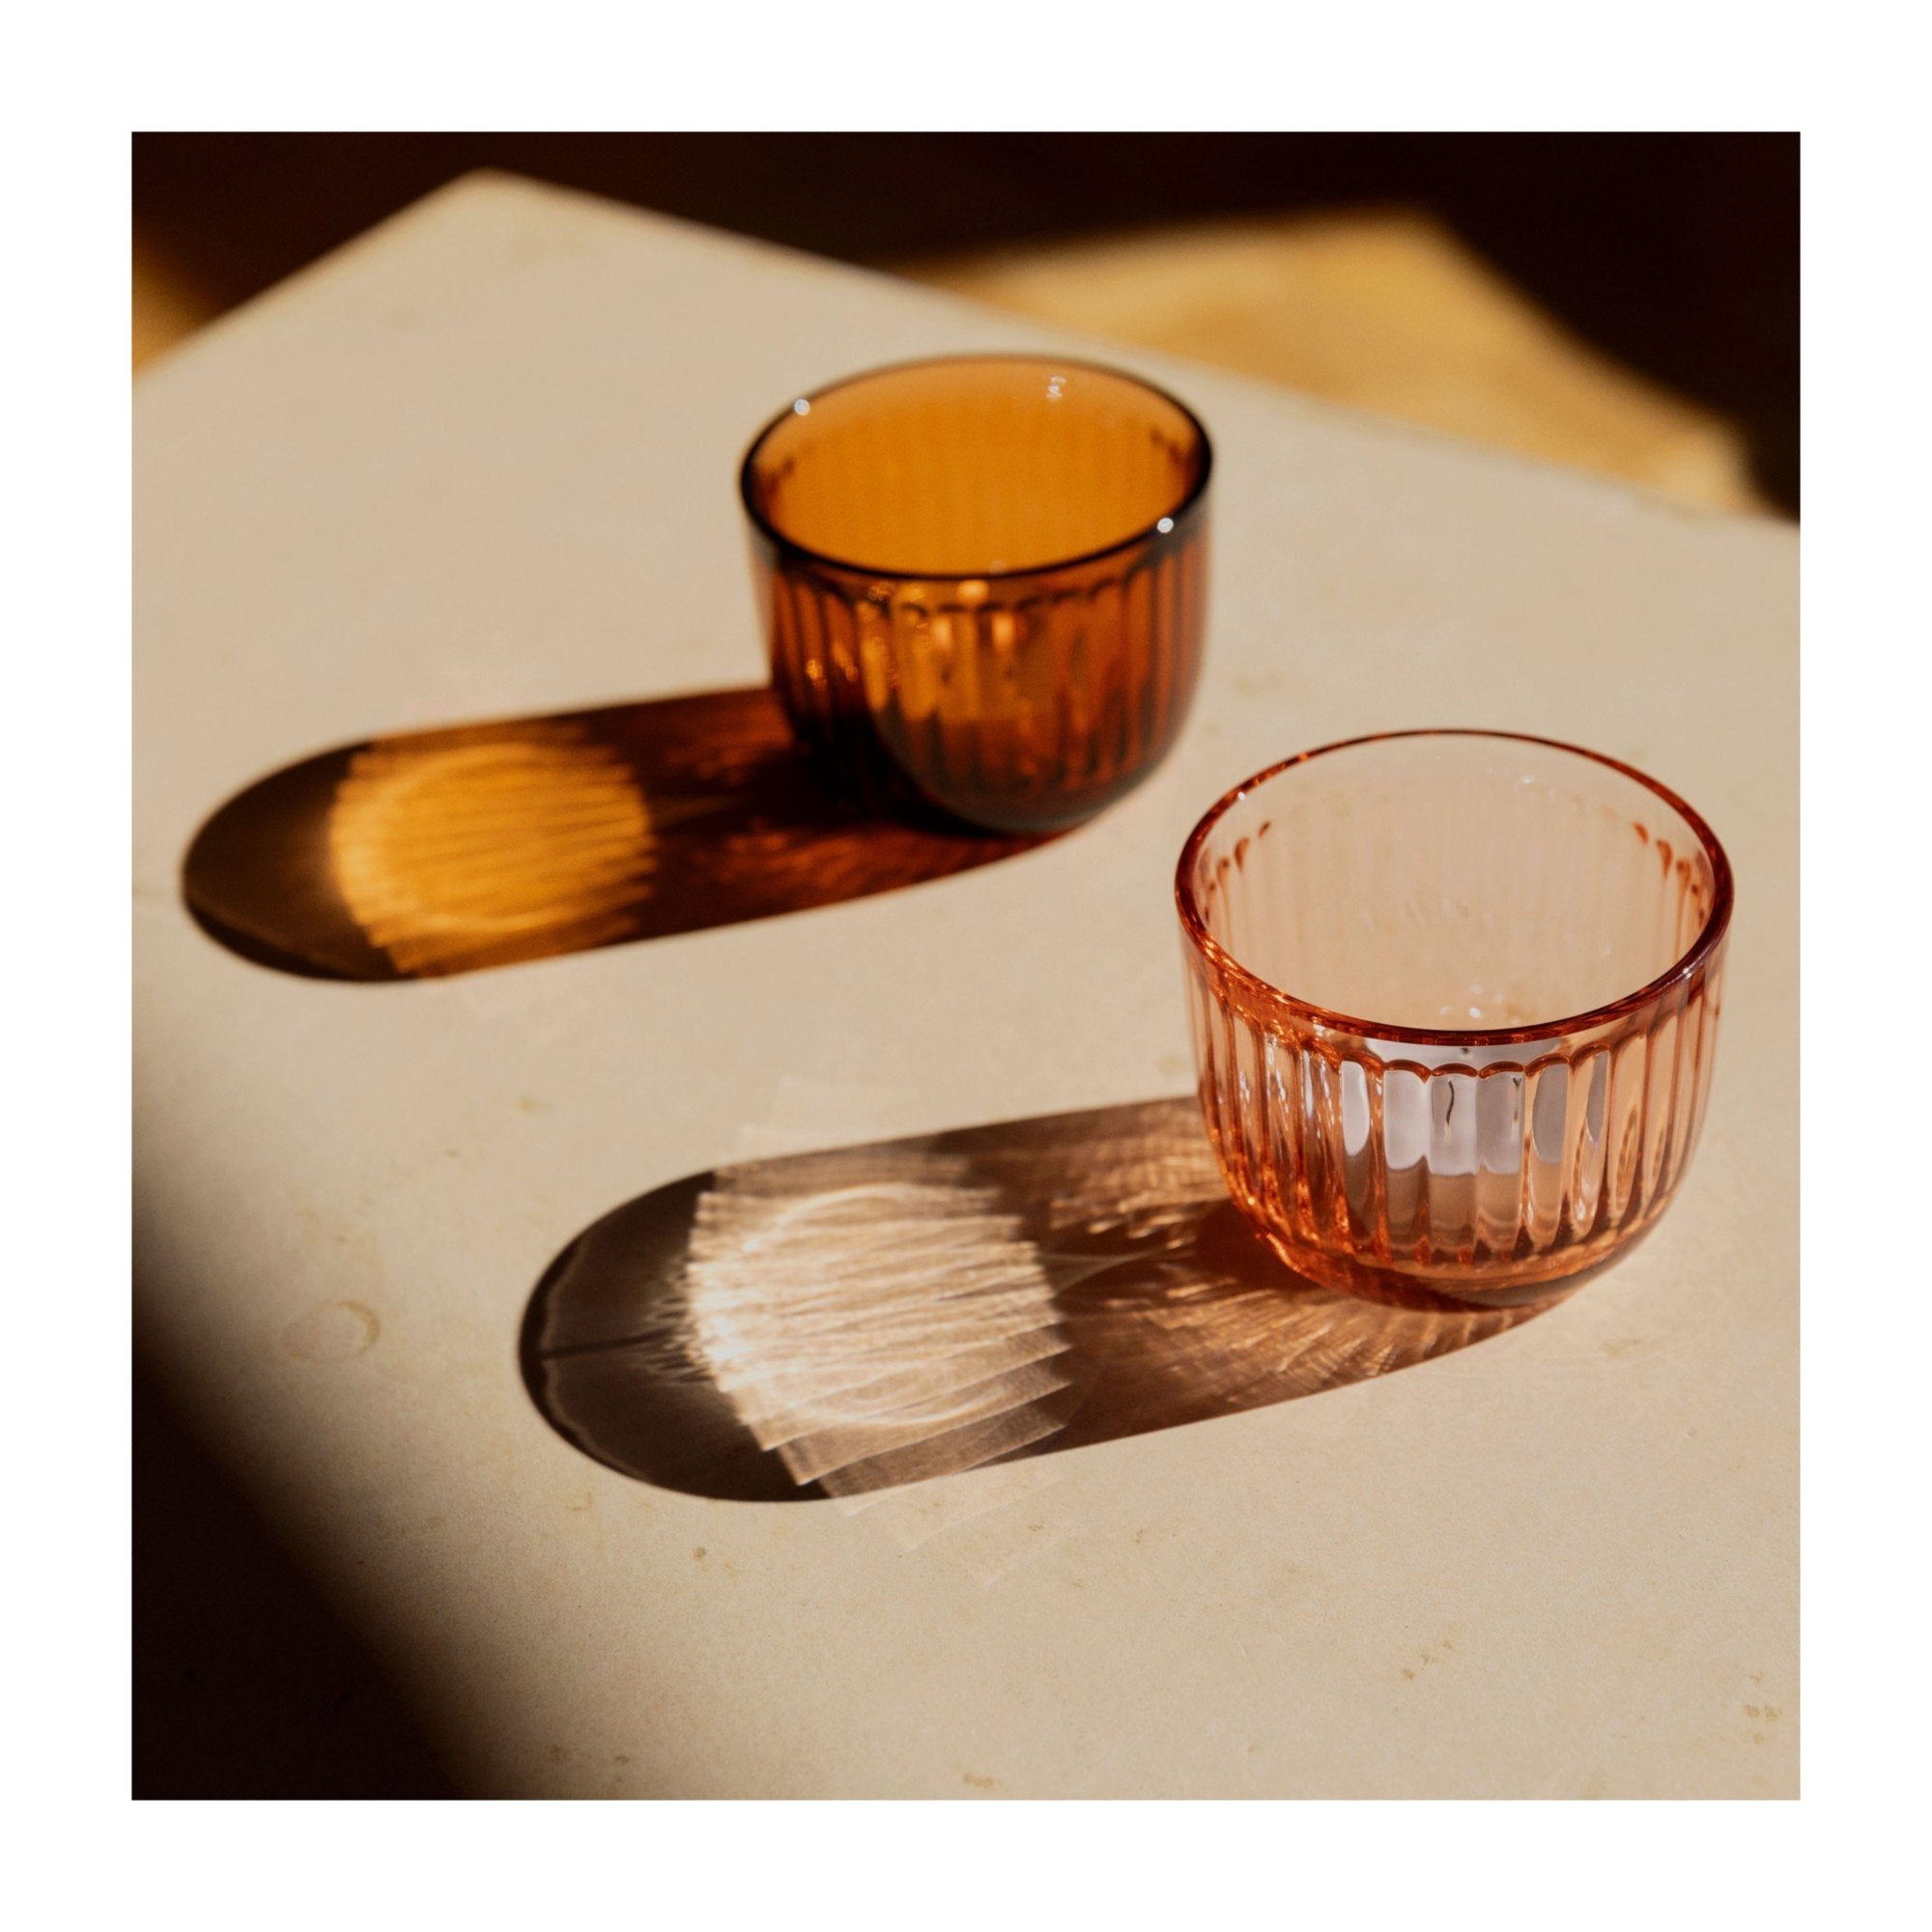 Iittala Raami Lantern Glass Seville Orange, 90 mm